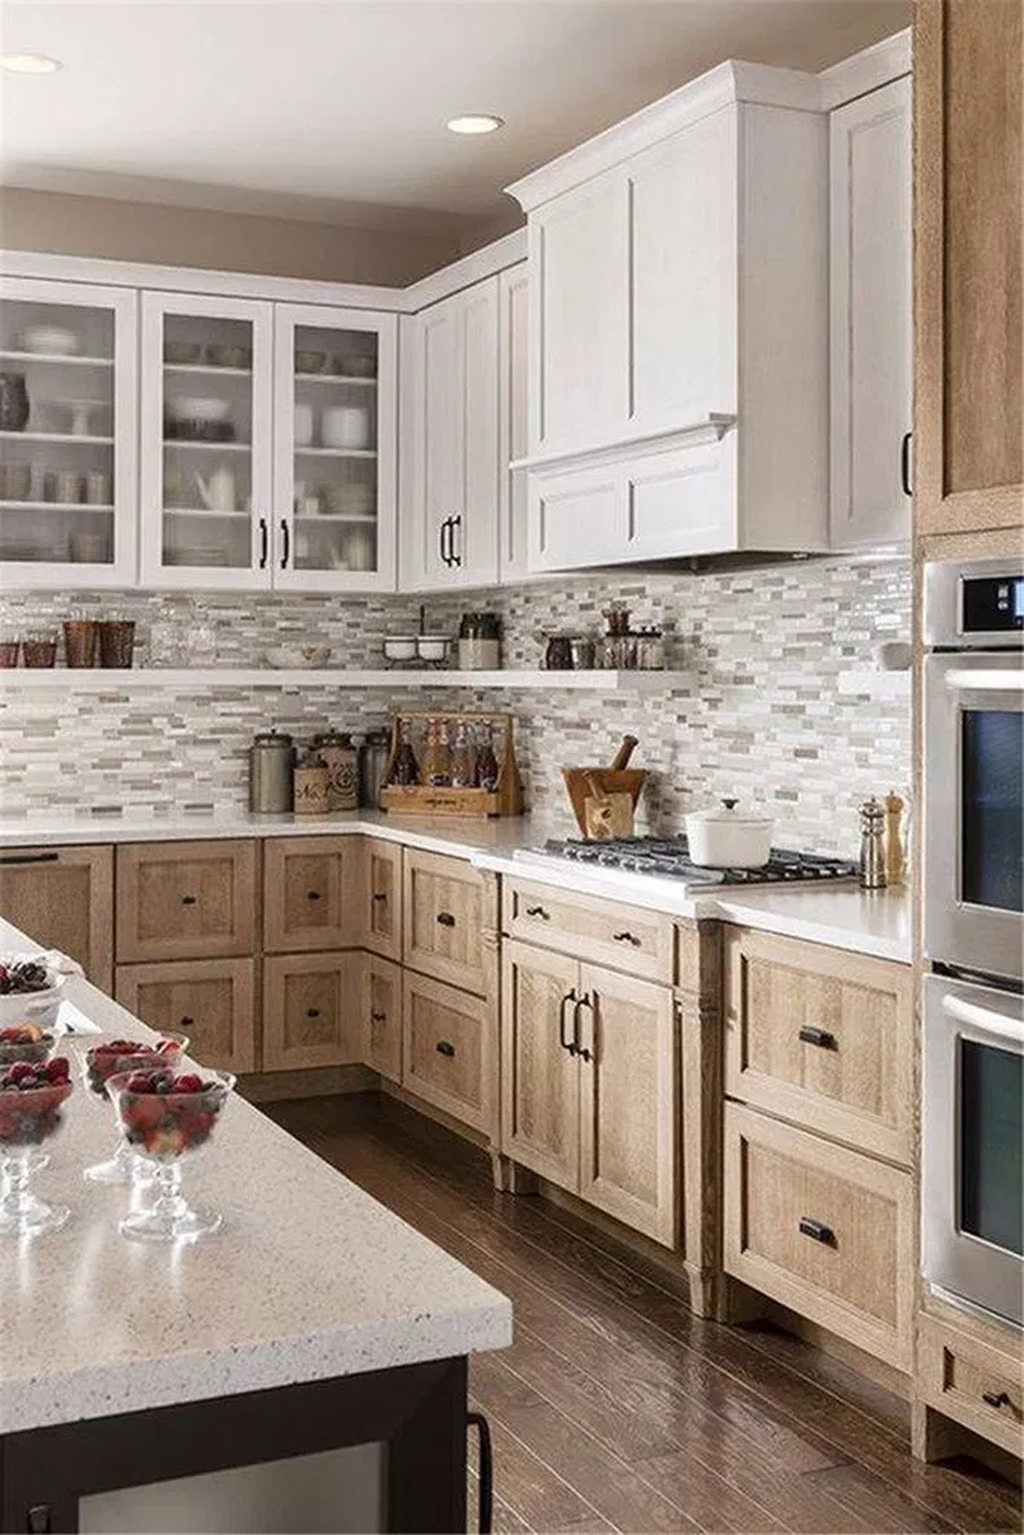 Elegant Modern Kitchen Decoration Ideas That Trend For 2019 03